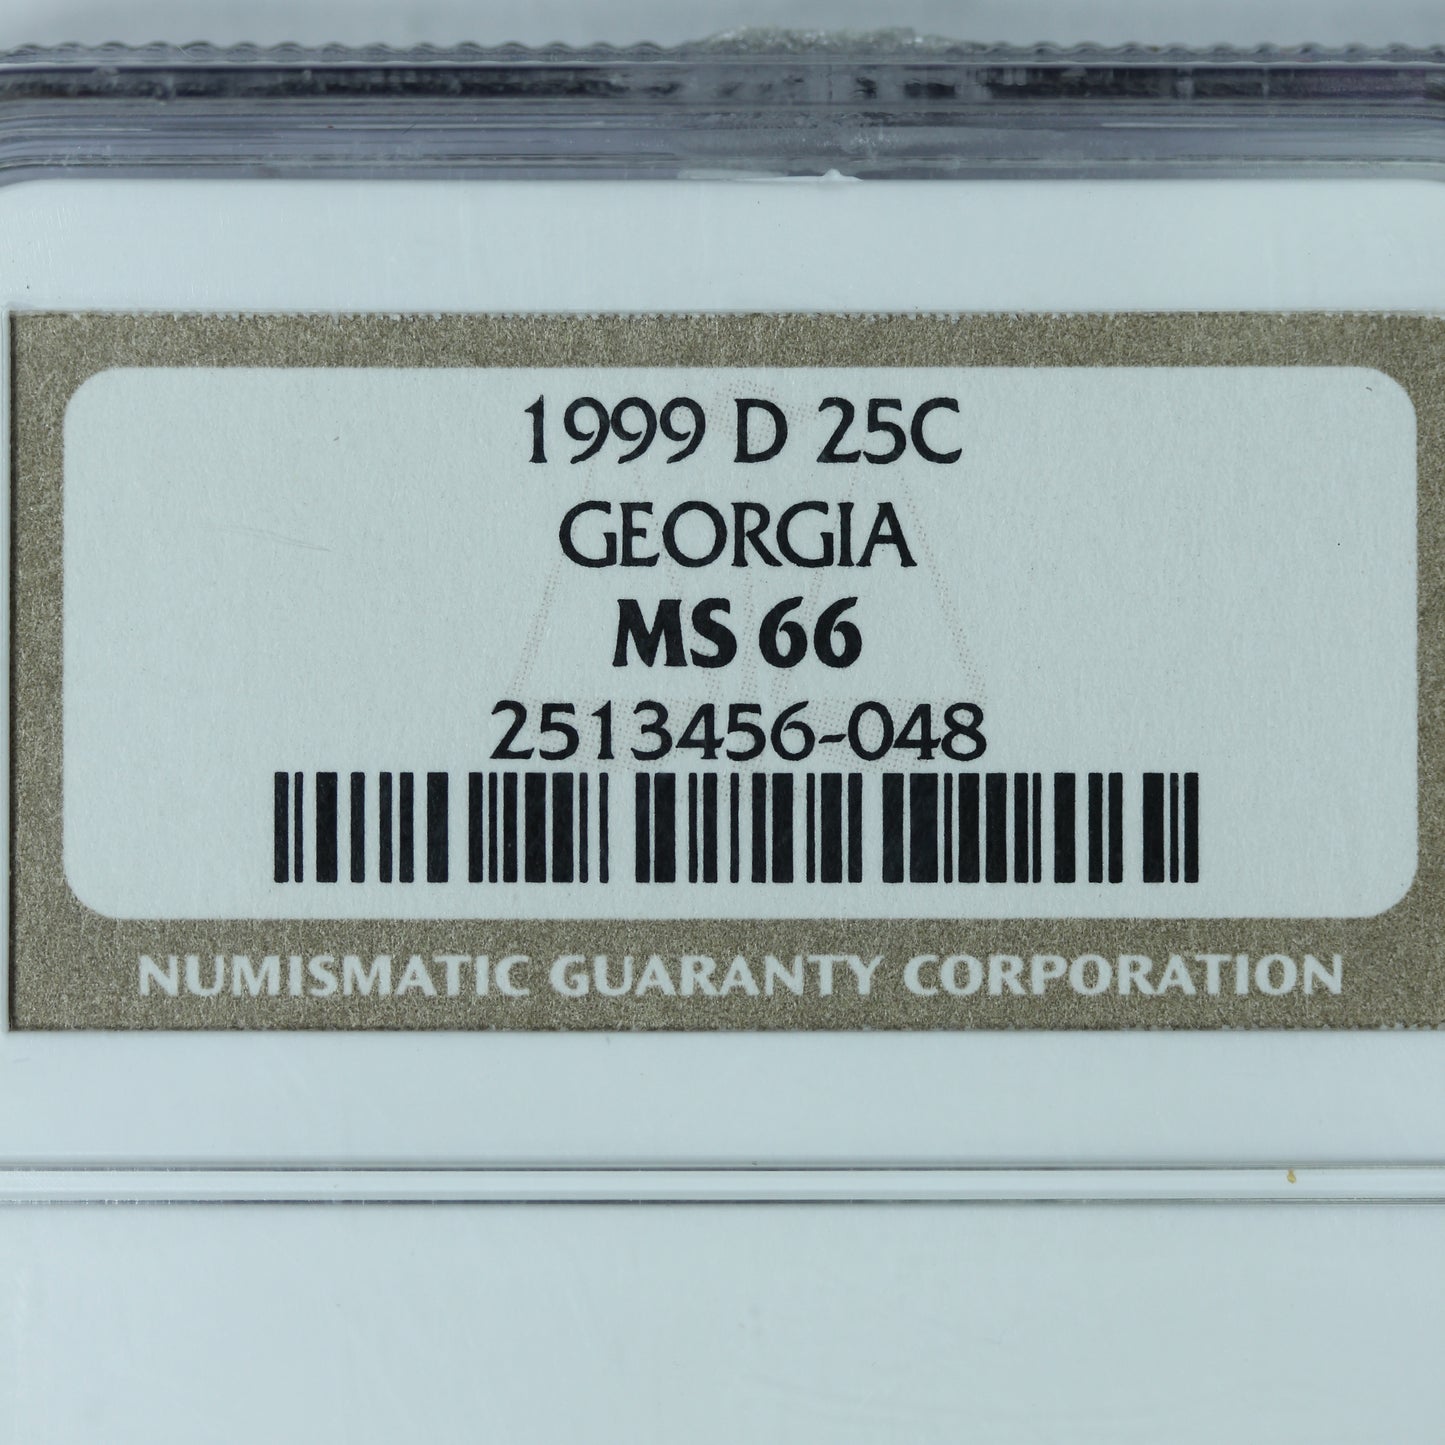 1999 D (Denver) 25c Georgia Quarter - NGC MS 66